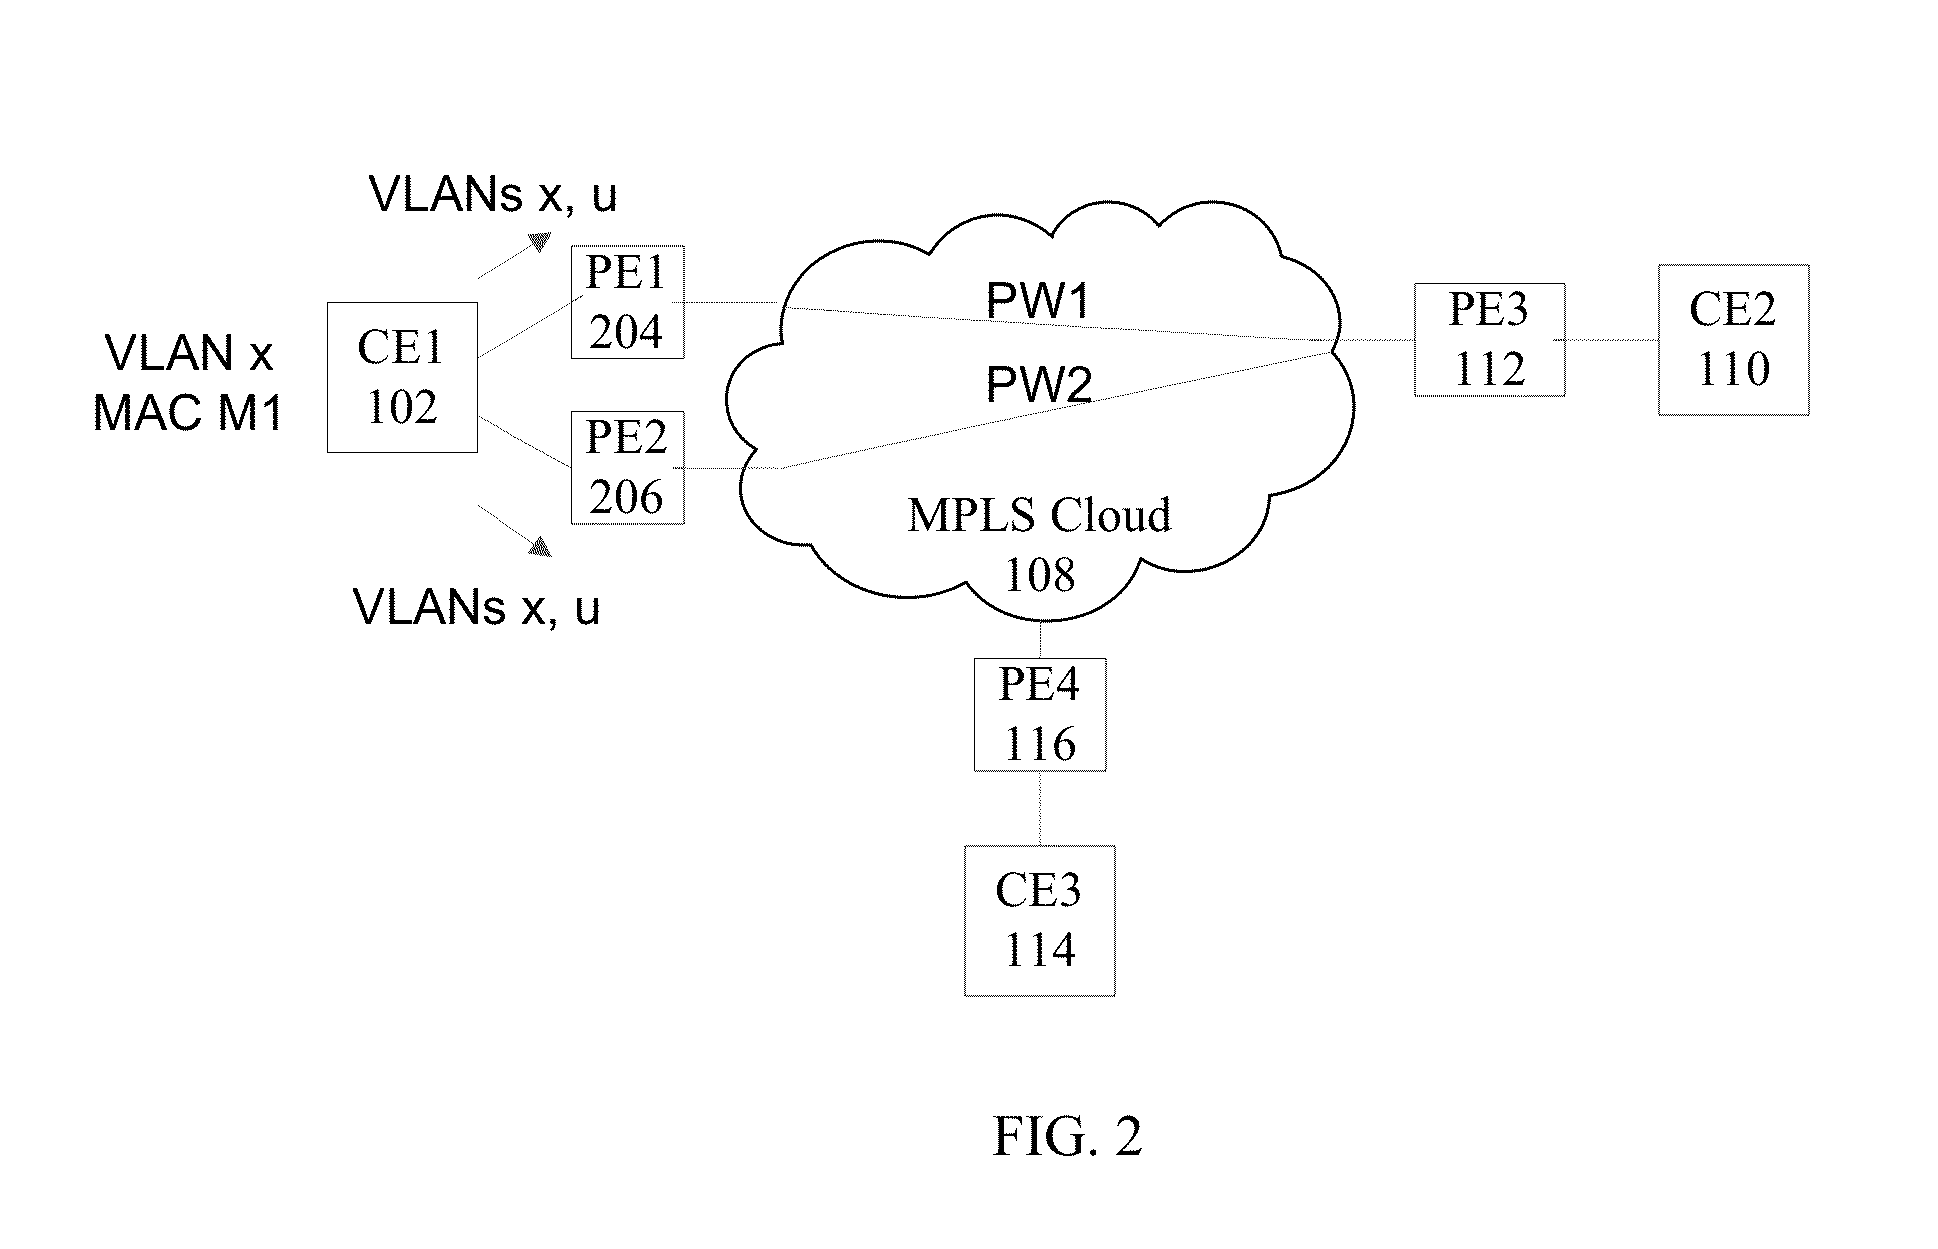 Mechanism for e-vpn interoperability with vpls